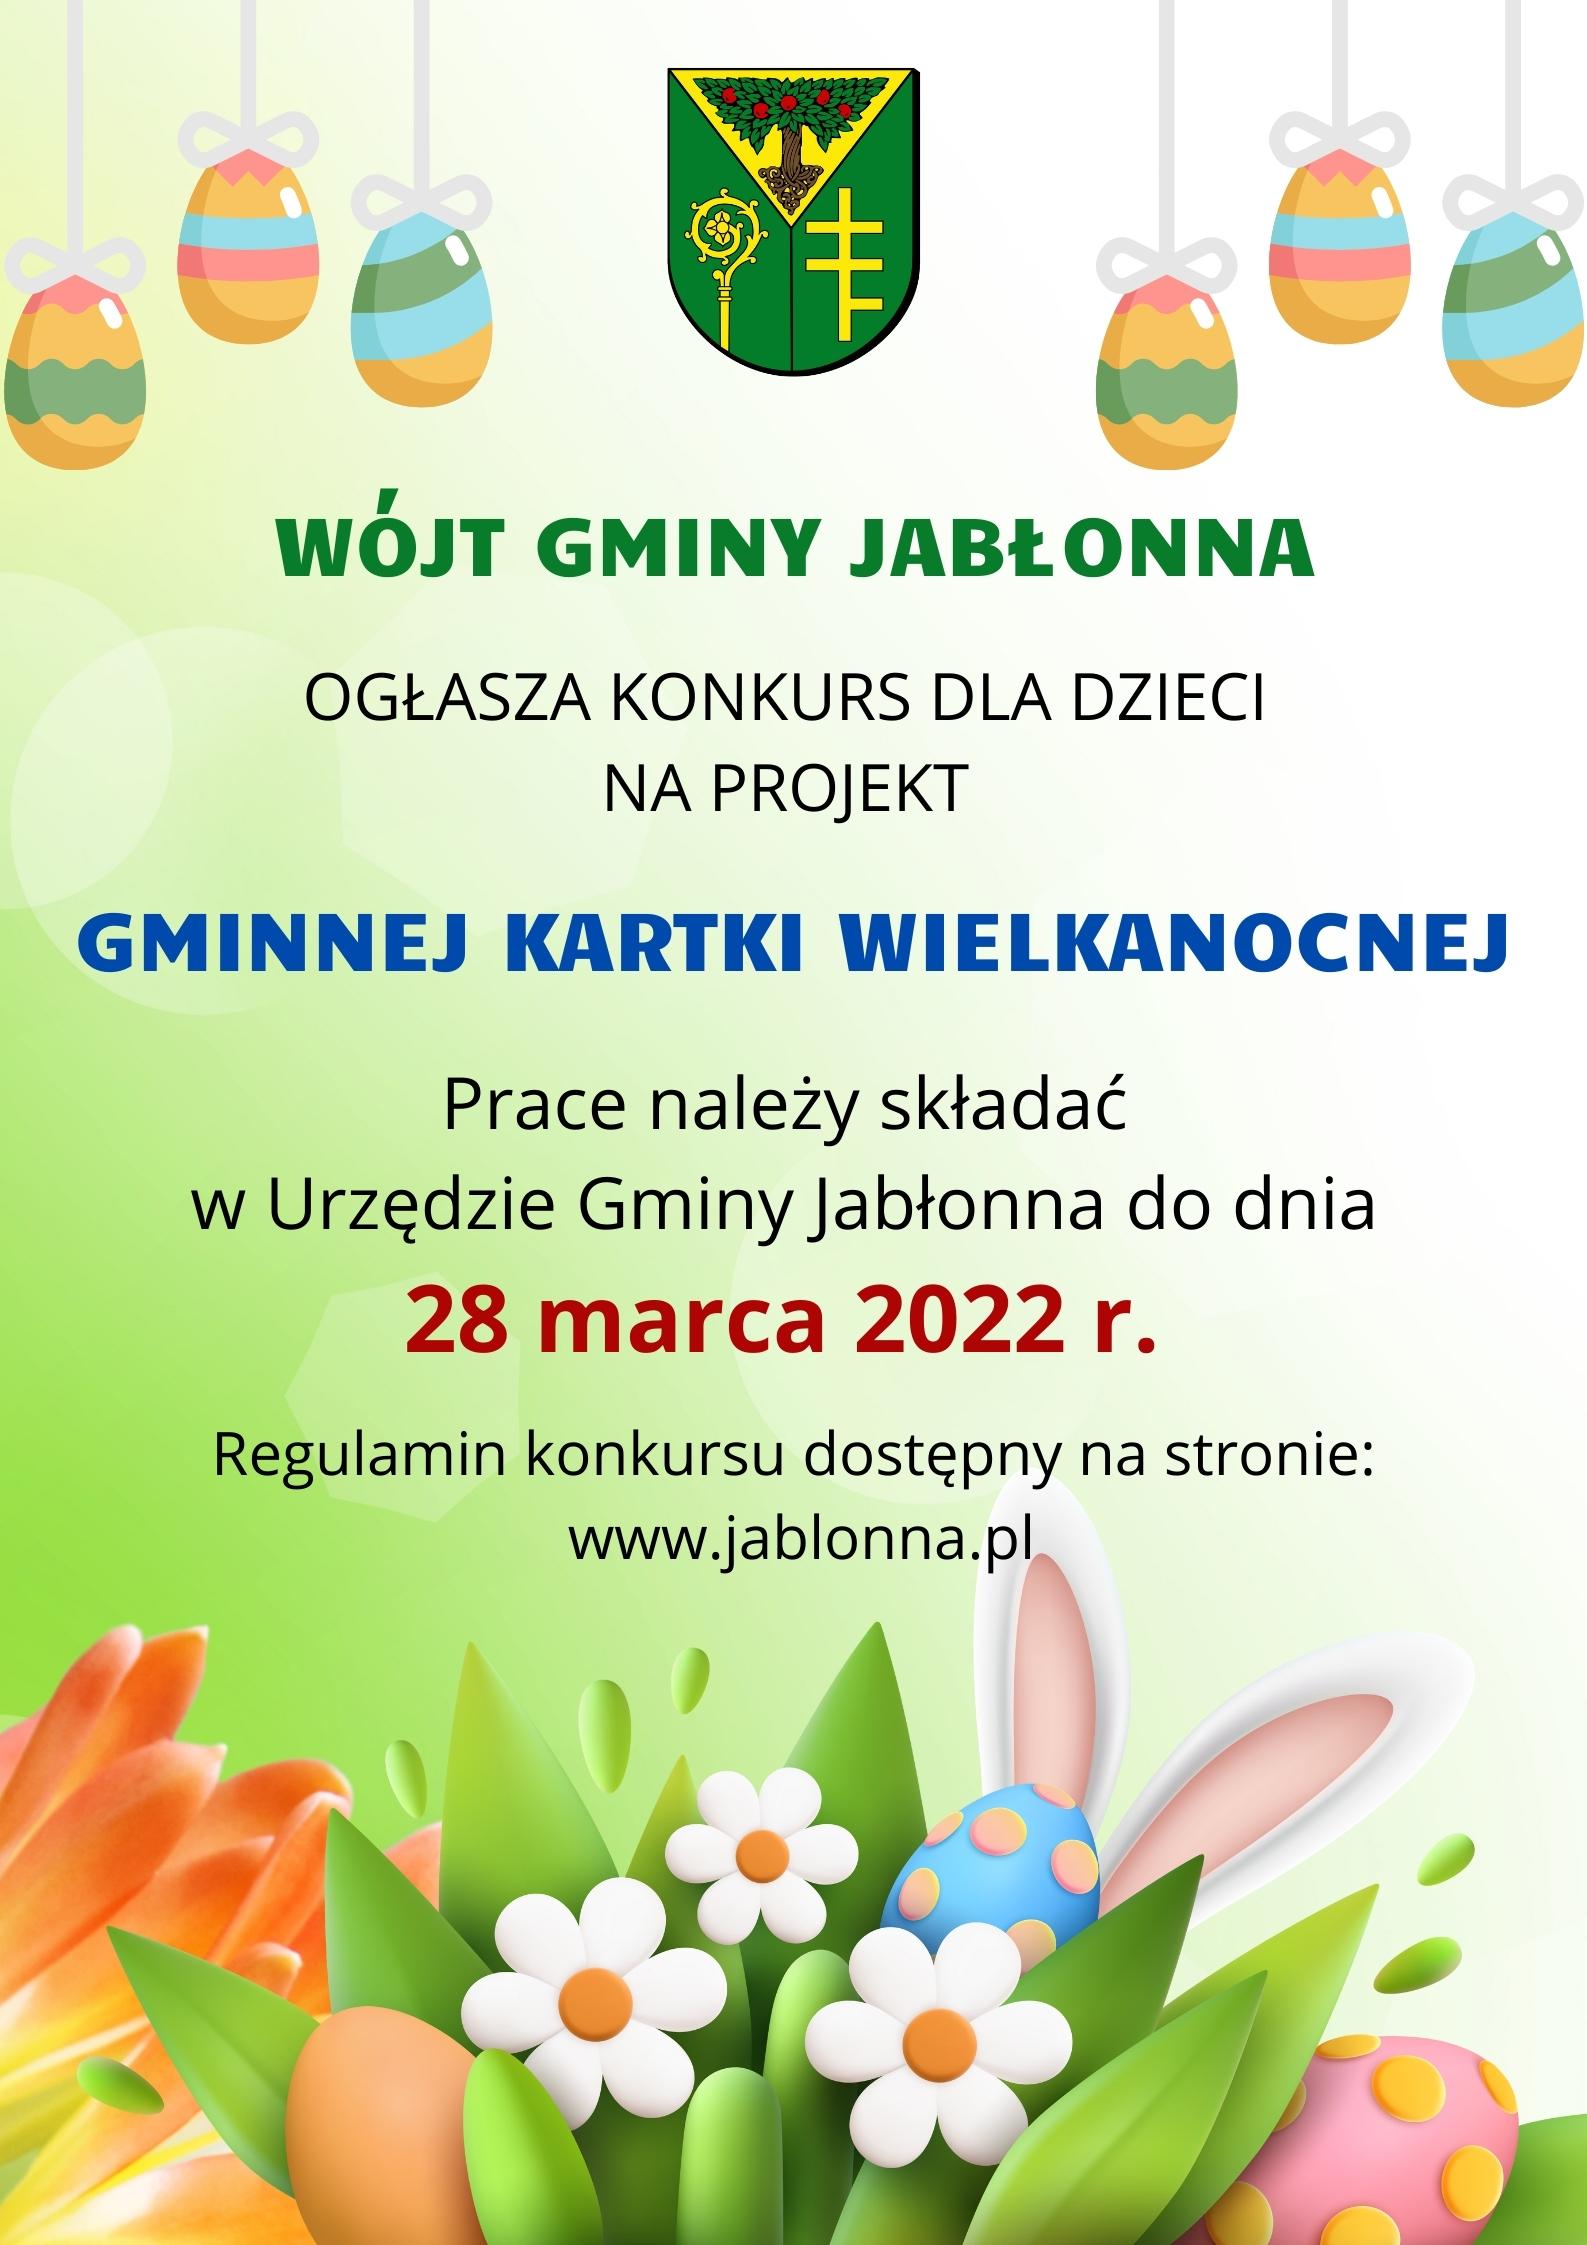 Wójt Gminy Jabłonna ogłasza konkurs dla dzieci na projekt Gminnej Kartki Wielkanocnej. Prace należy składać w Urzędzie Gminy Jabłonna do 28 marca 2022 r. Regulamin konkursu dostępny na stronie www.jablonna.pl 